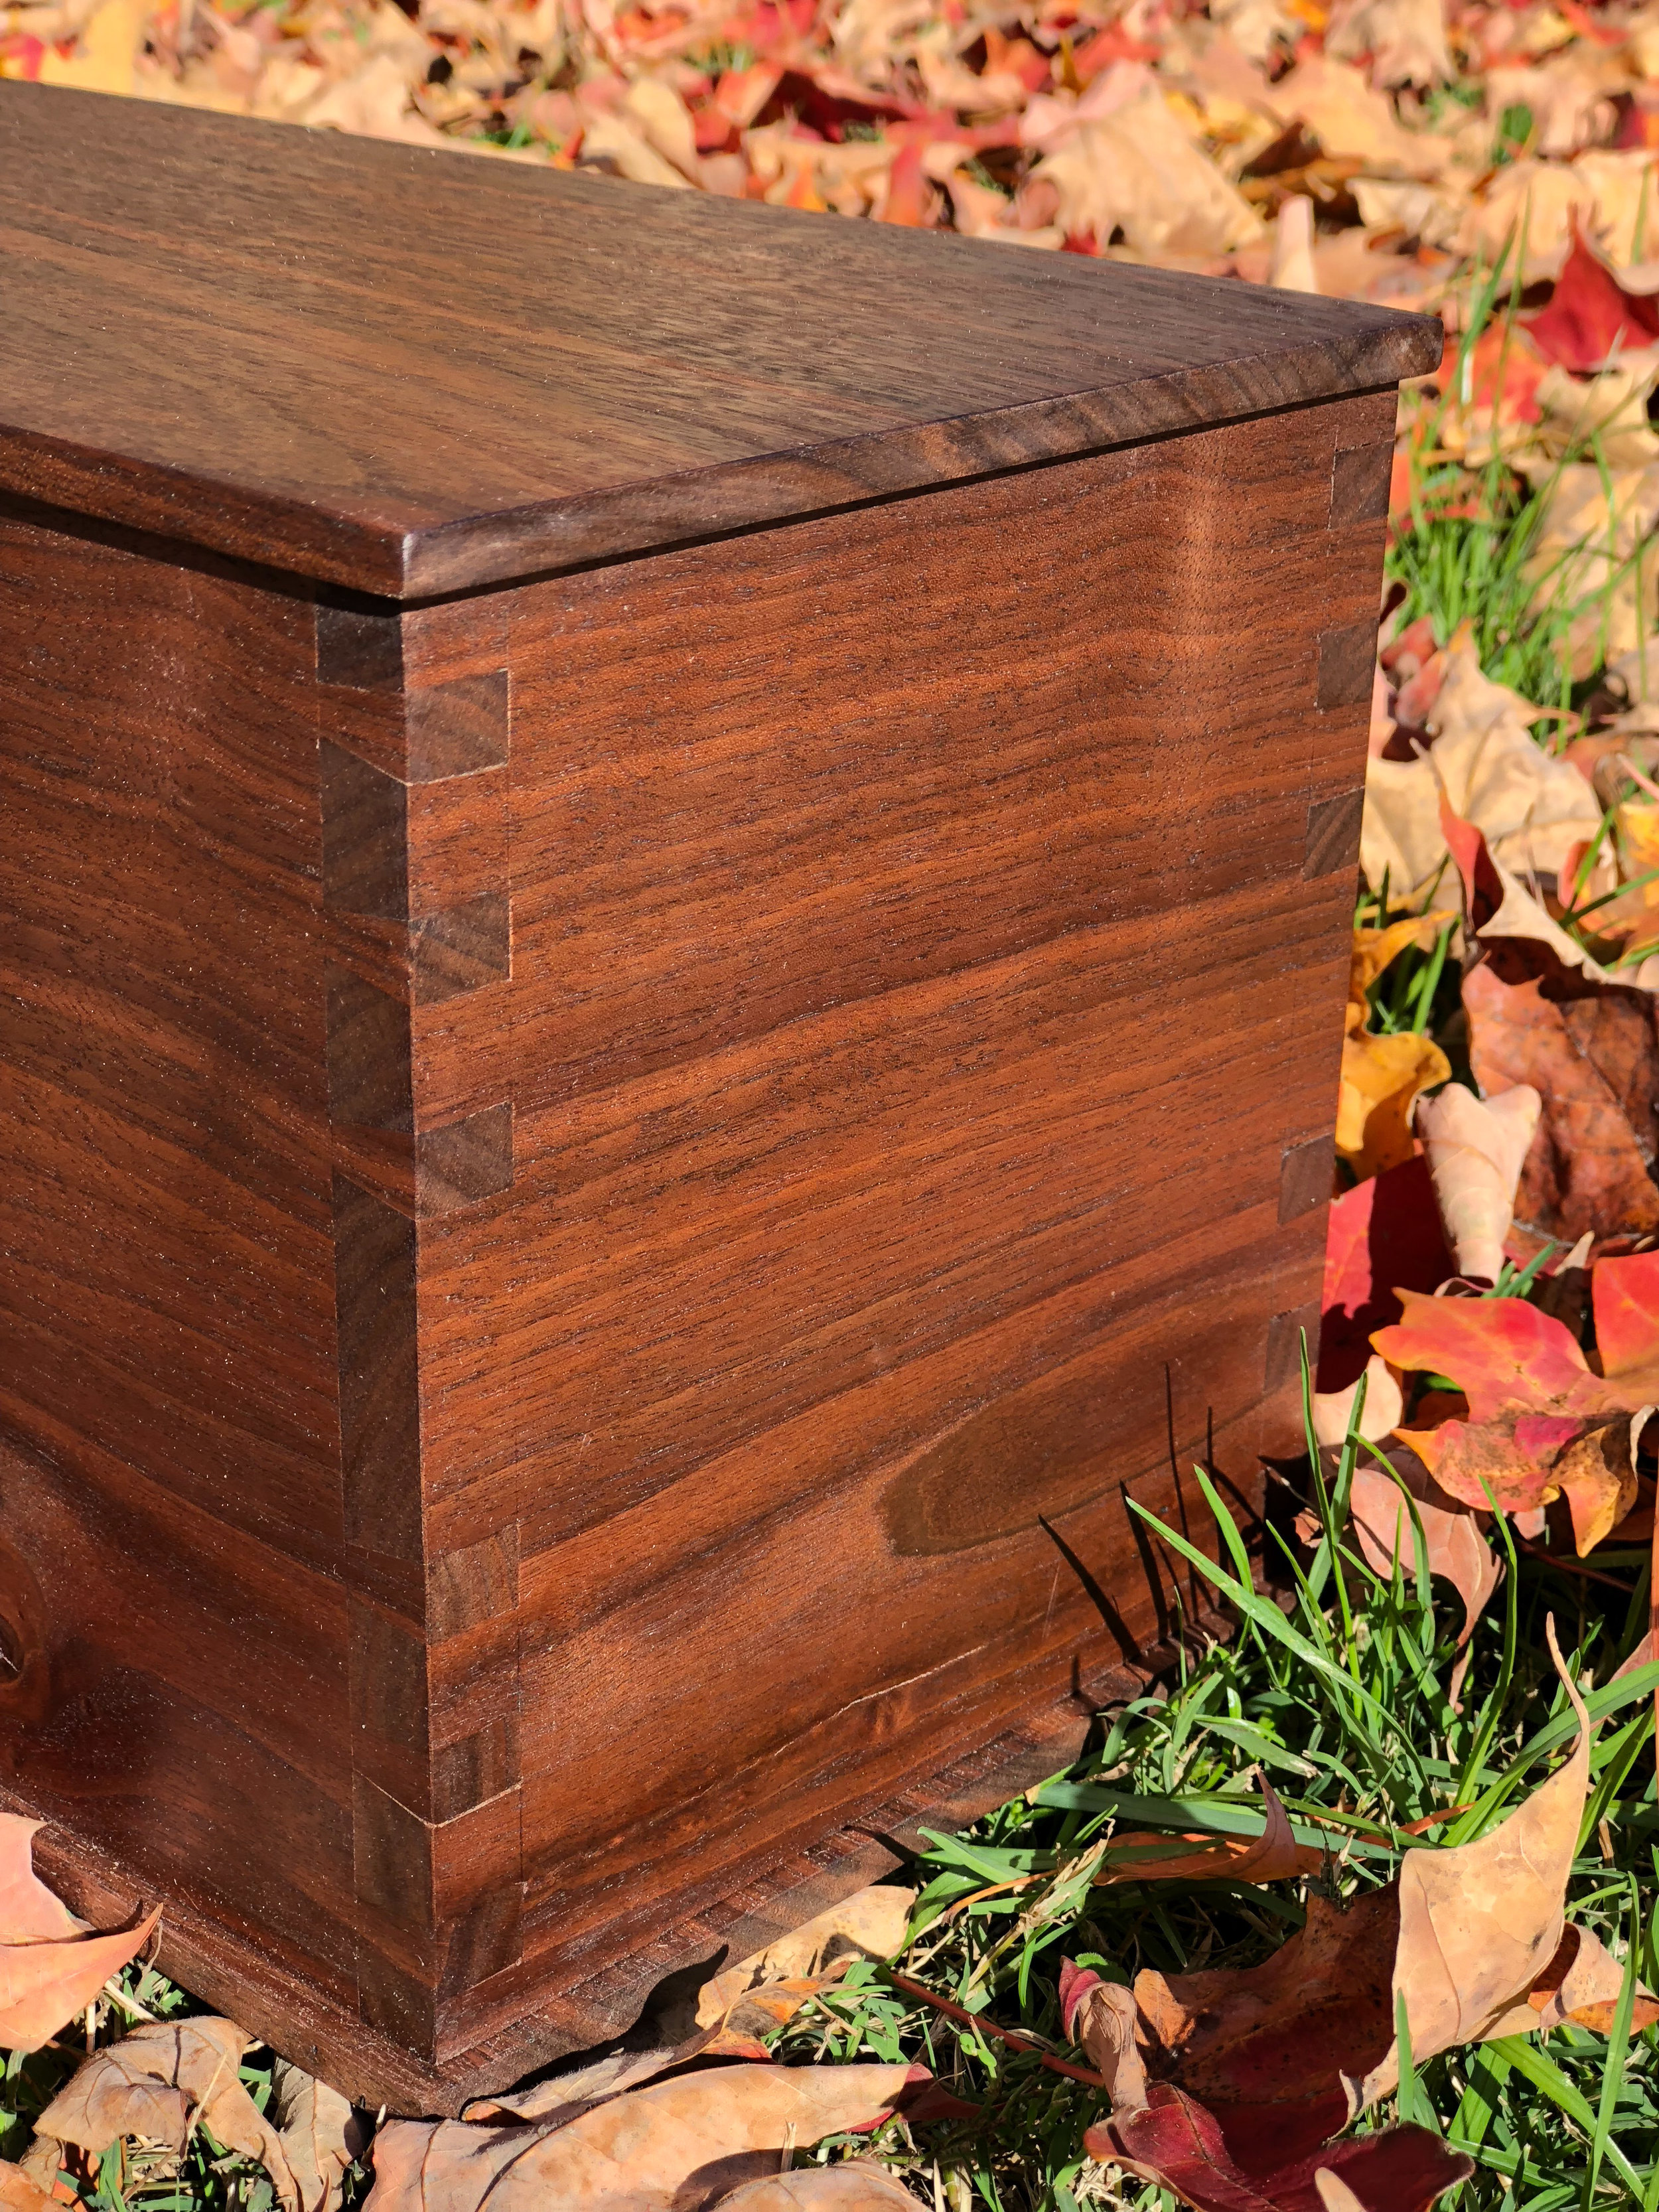 Wooden Cremation Urn. handmade wooden box. sallie plumley studio. richmond virginia